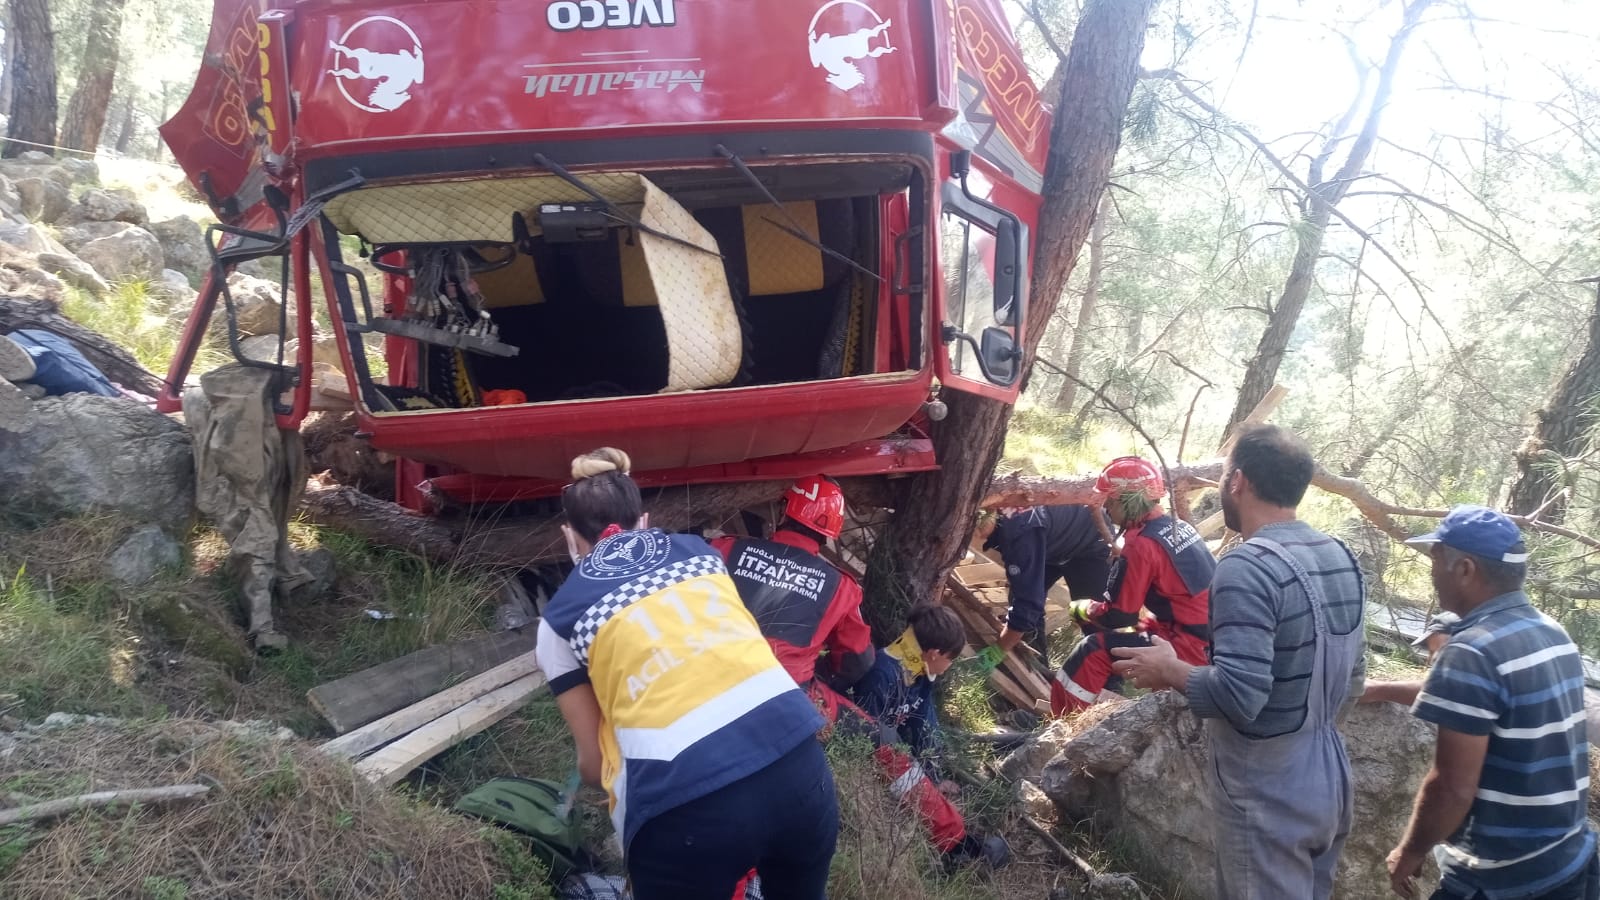 Muğla'da kamyonet şarampole yuvarlandı: 1 ölü, 3 yaralı